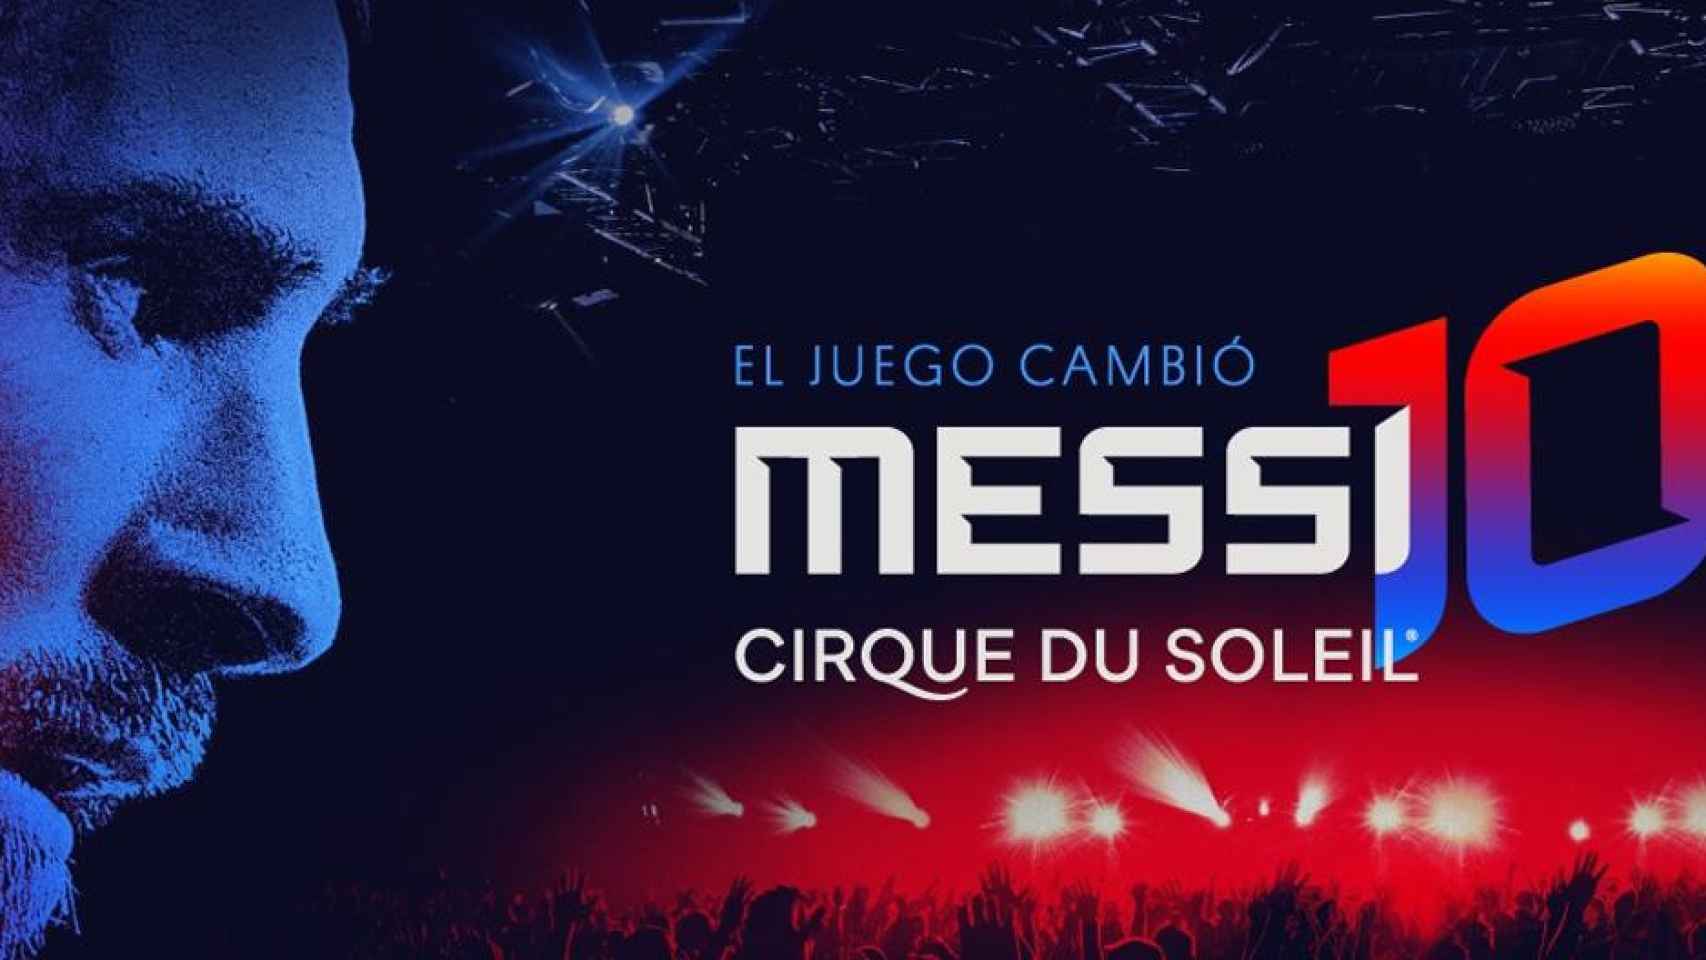 'Messi 10 by Cirque du Soleil' / CIRQUE DU SOLEIL